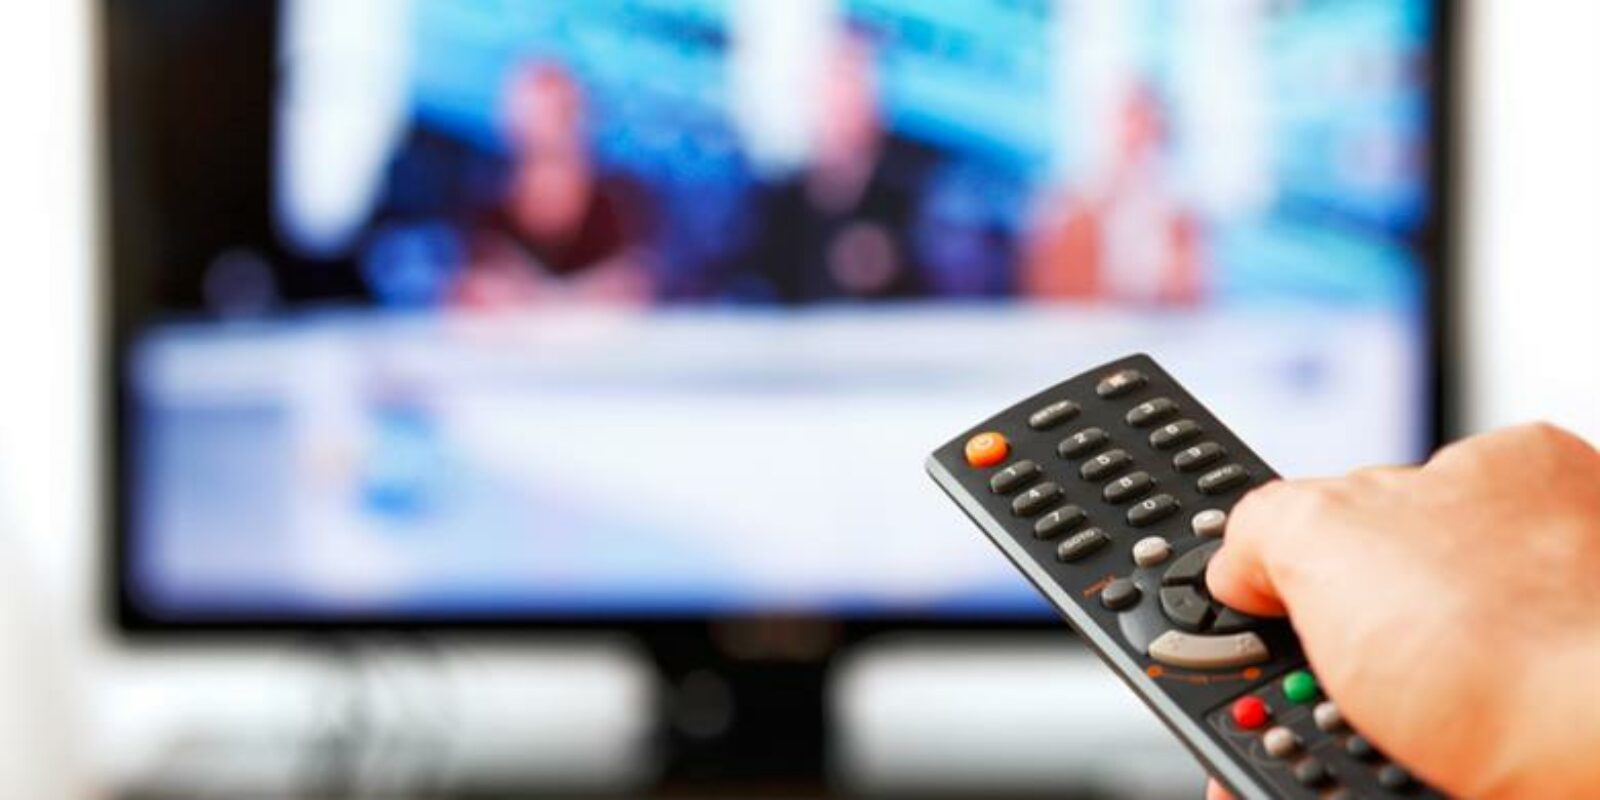 Comment évaluer la rentabilité de ses investissements TV?